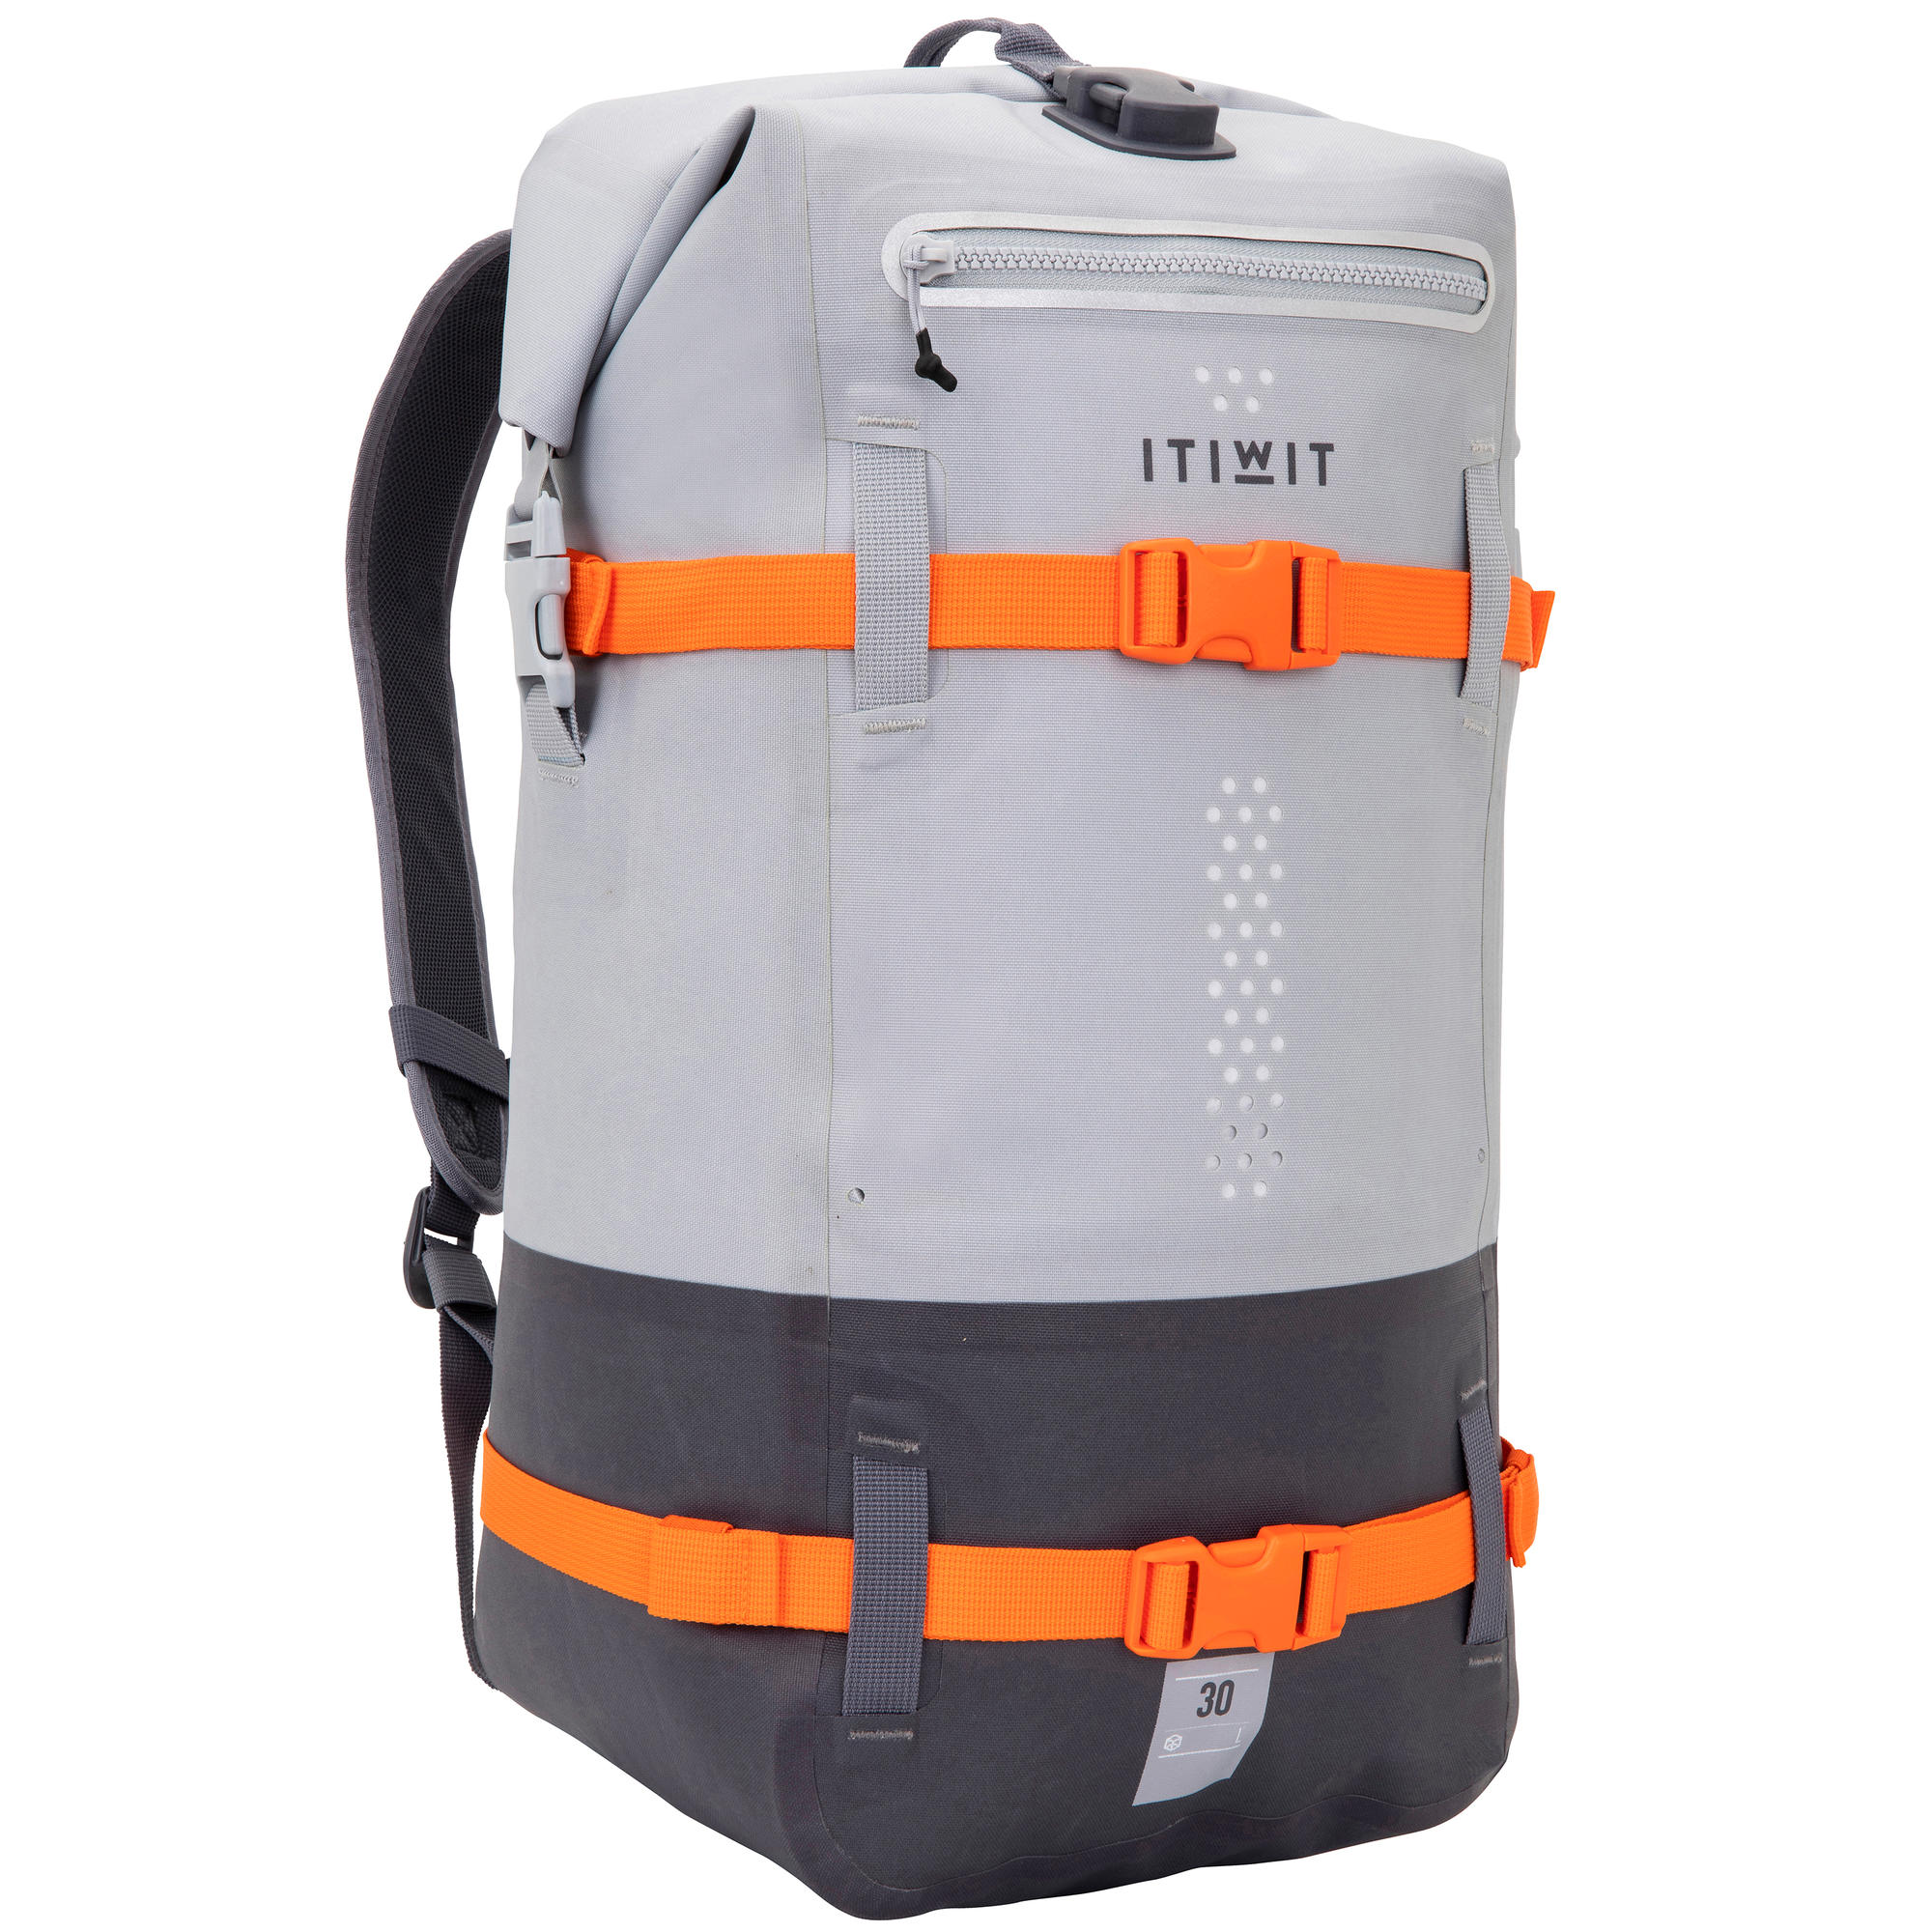 Waterproof Backpack 30L - Grey | itiwit